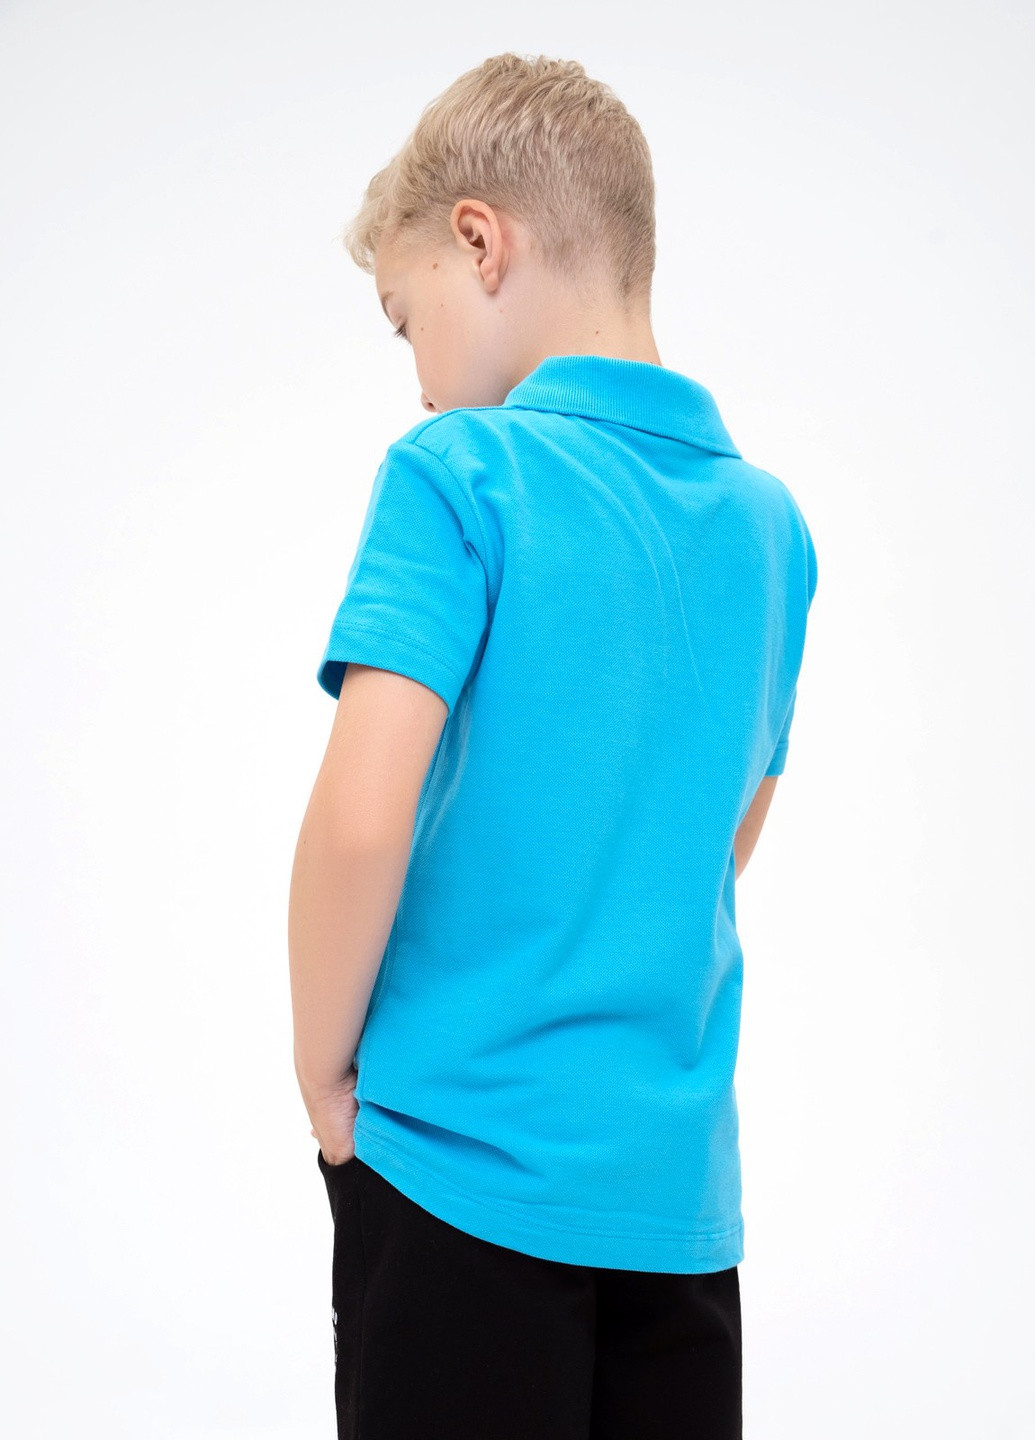 Голубая летняя футболка детская ISSA PLUS Футболка-GCD1-01